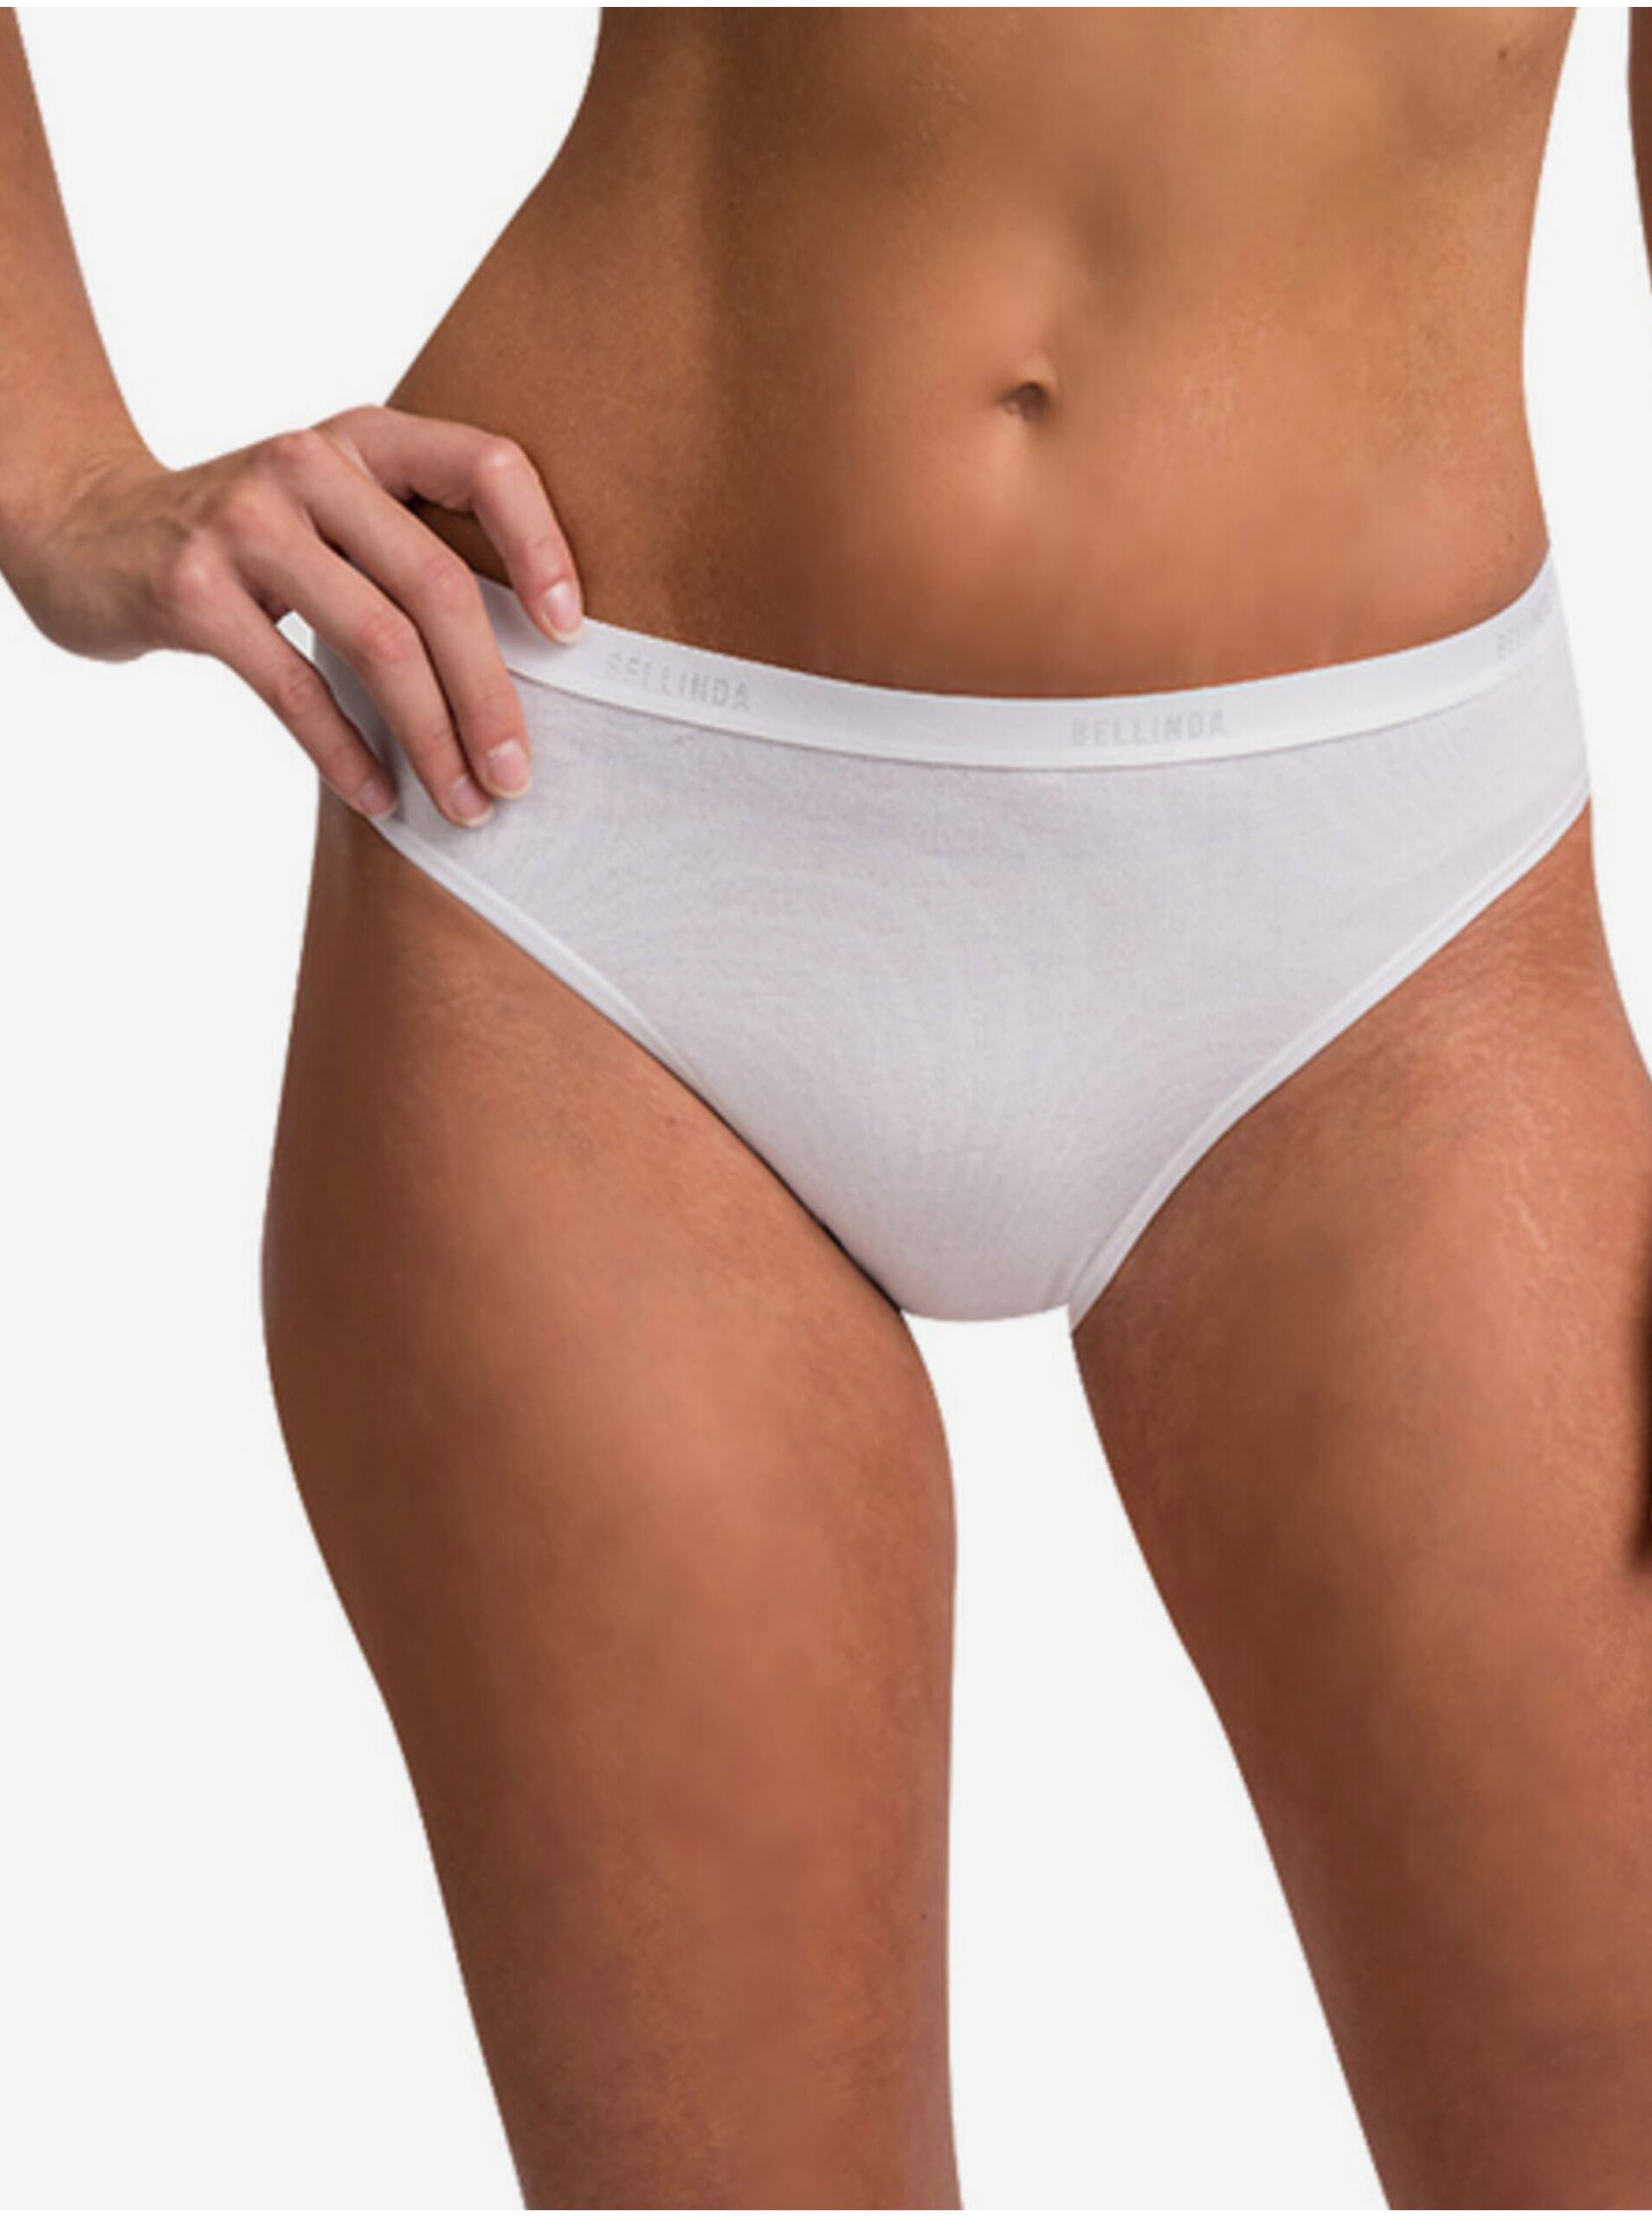 E-shop Bílé dámské kalhotky Bellinda Cotton Minislip